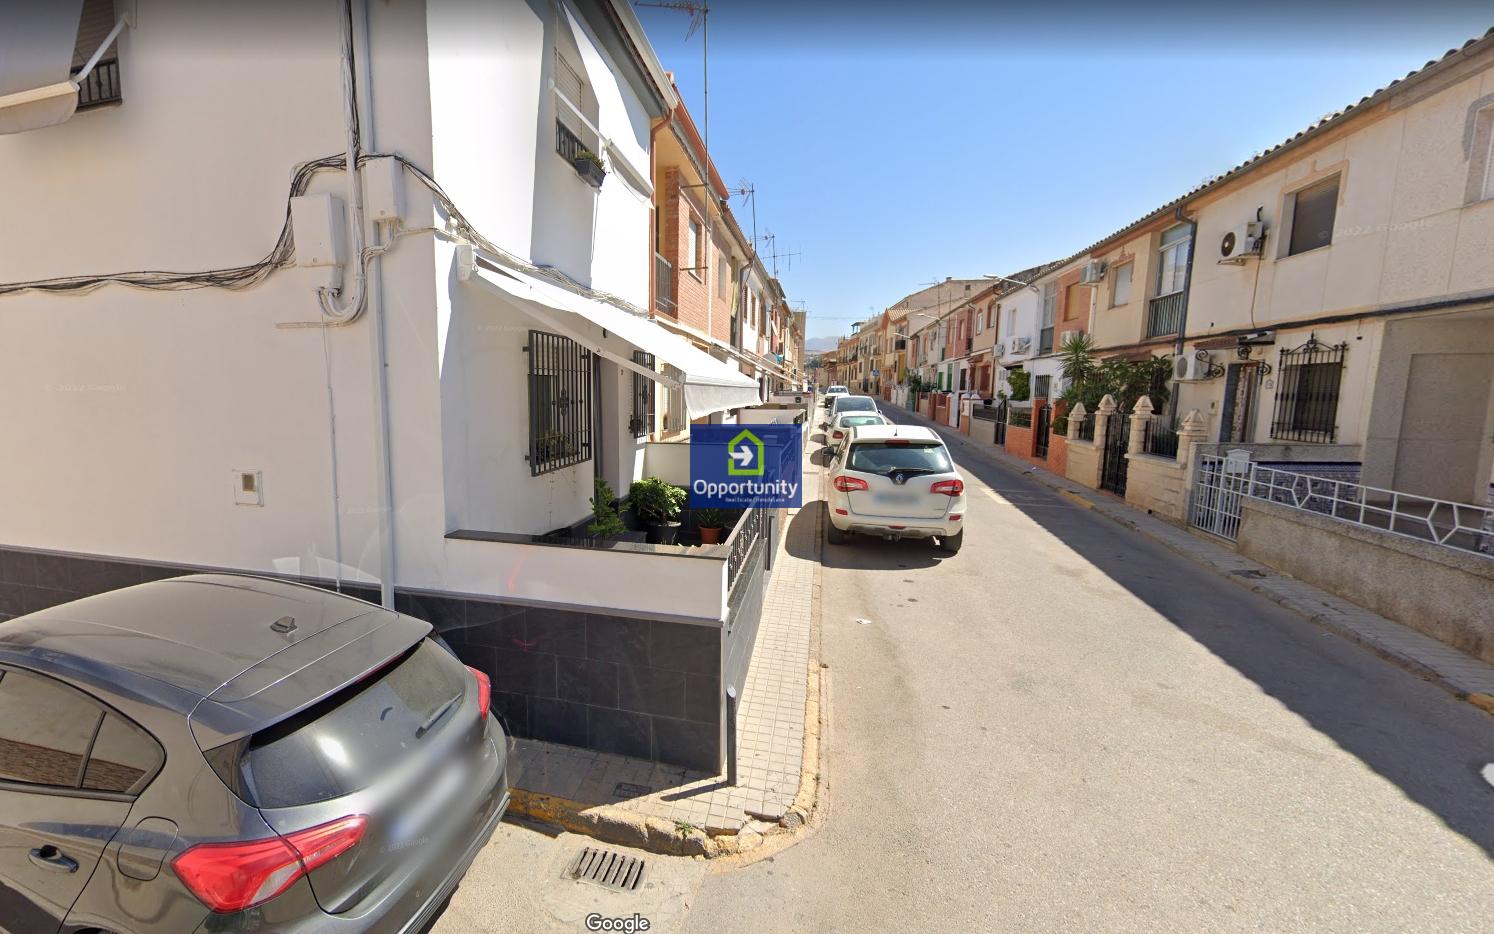 Hus udlejes på lang tid I Albolote, 650€/måned